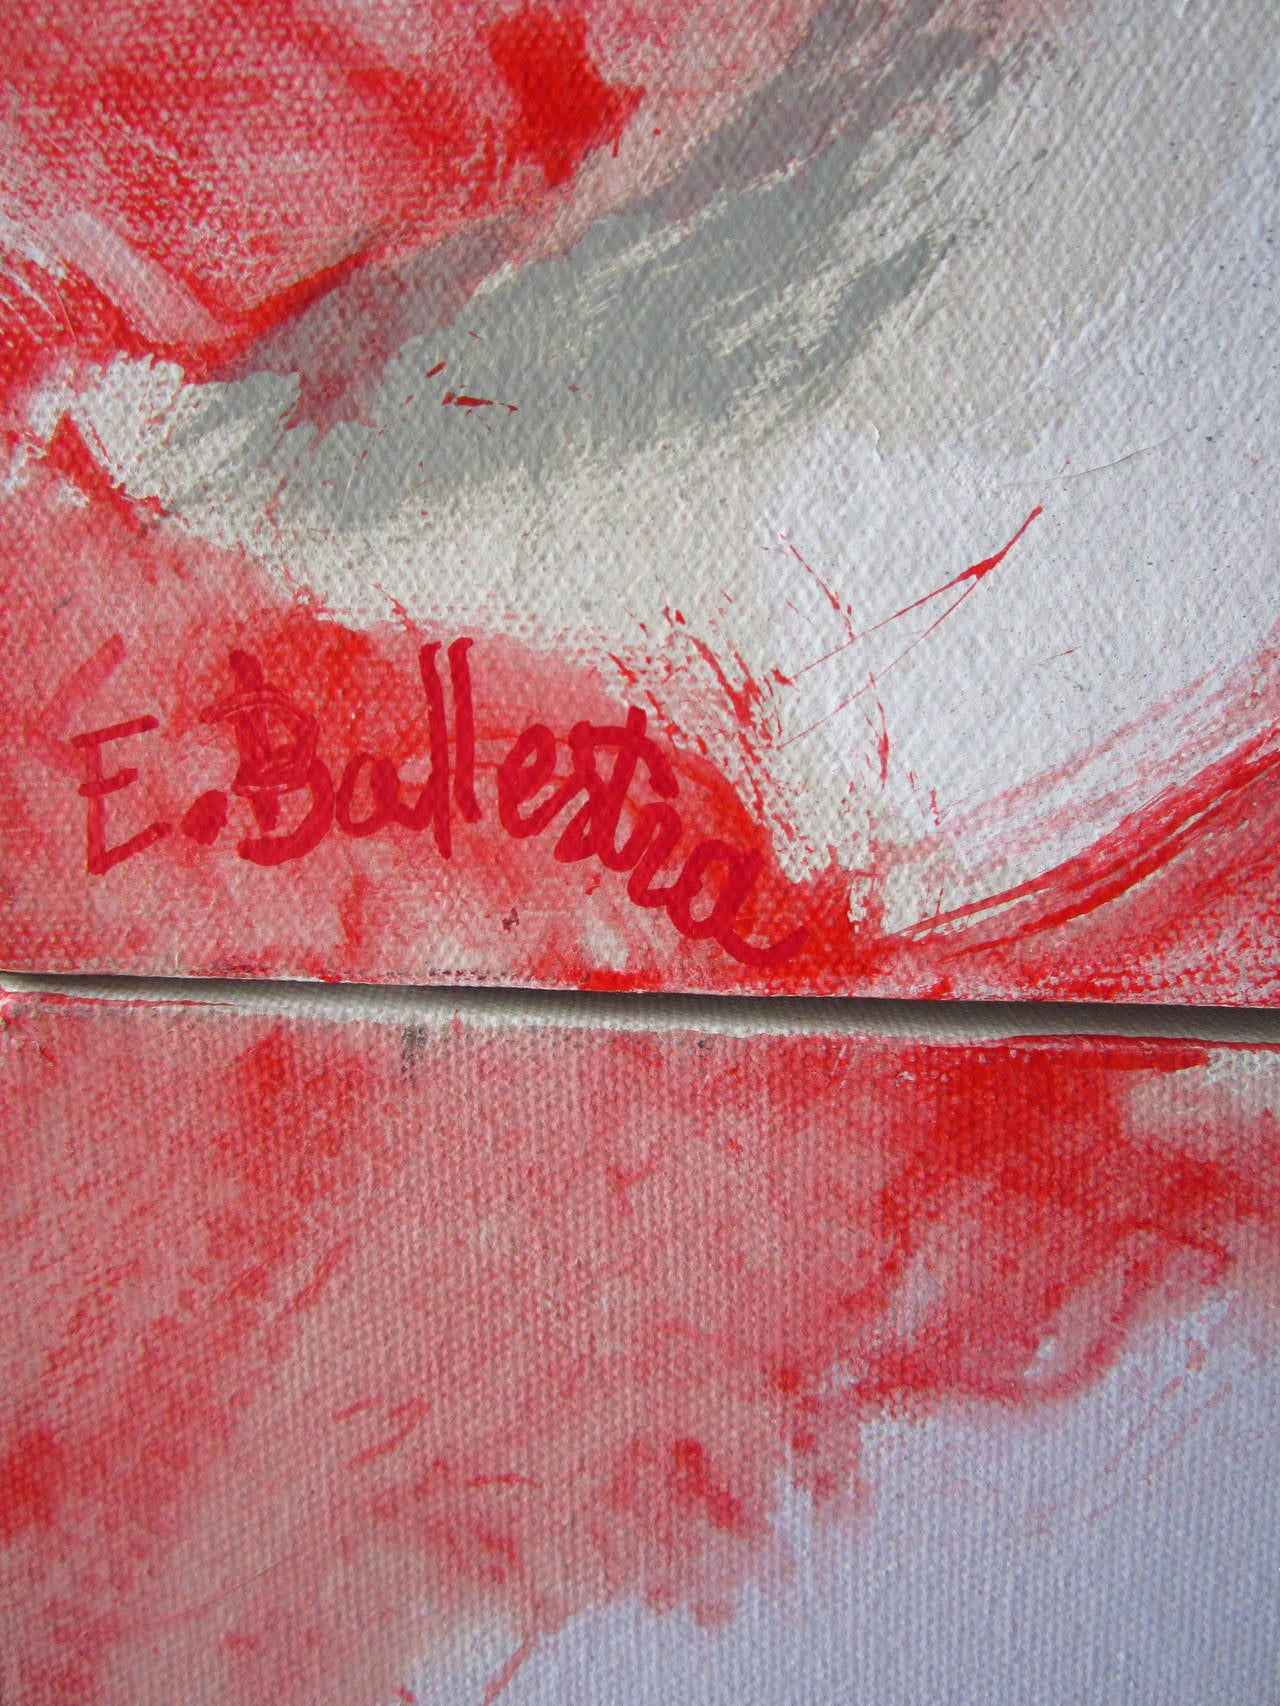 Red Dog on the Moon ist ein Gemälde von Evelyne Ballestra, einer französischen Künstlerin der Gegenwart. Dieses rot-weiße expressionistische Gemälde stellt die Sicht des Künstlers auf die Wolken dar, die durch den Sonnenuntergang, der sich um den